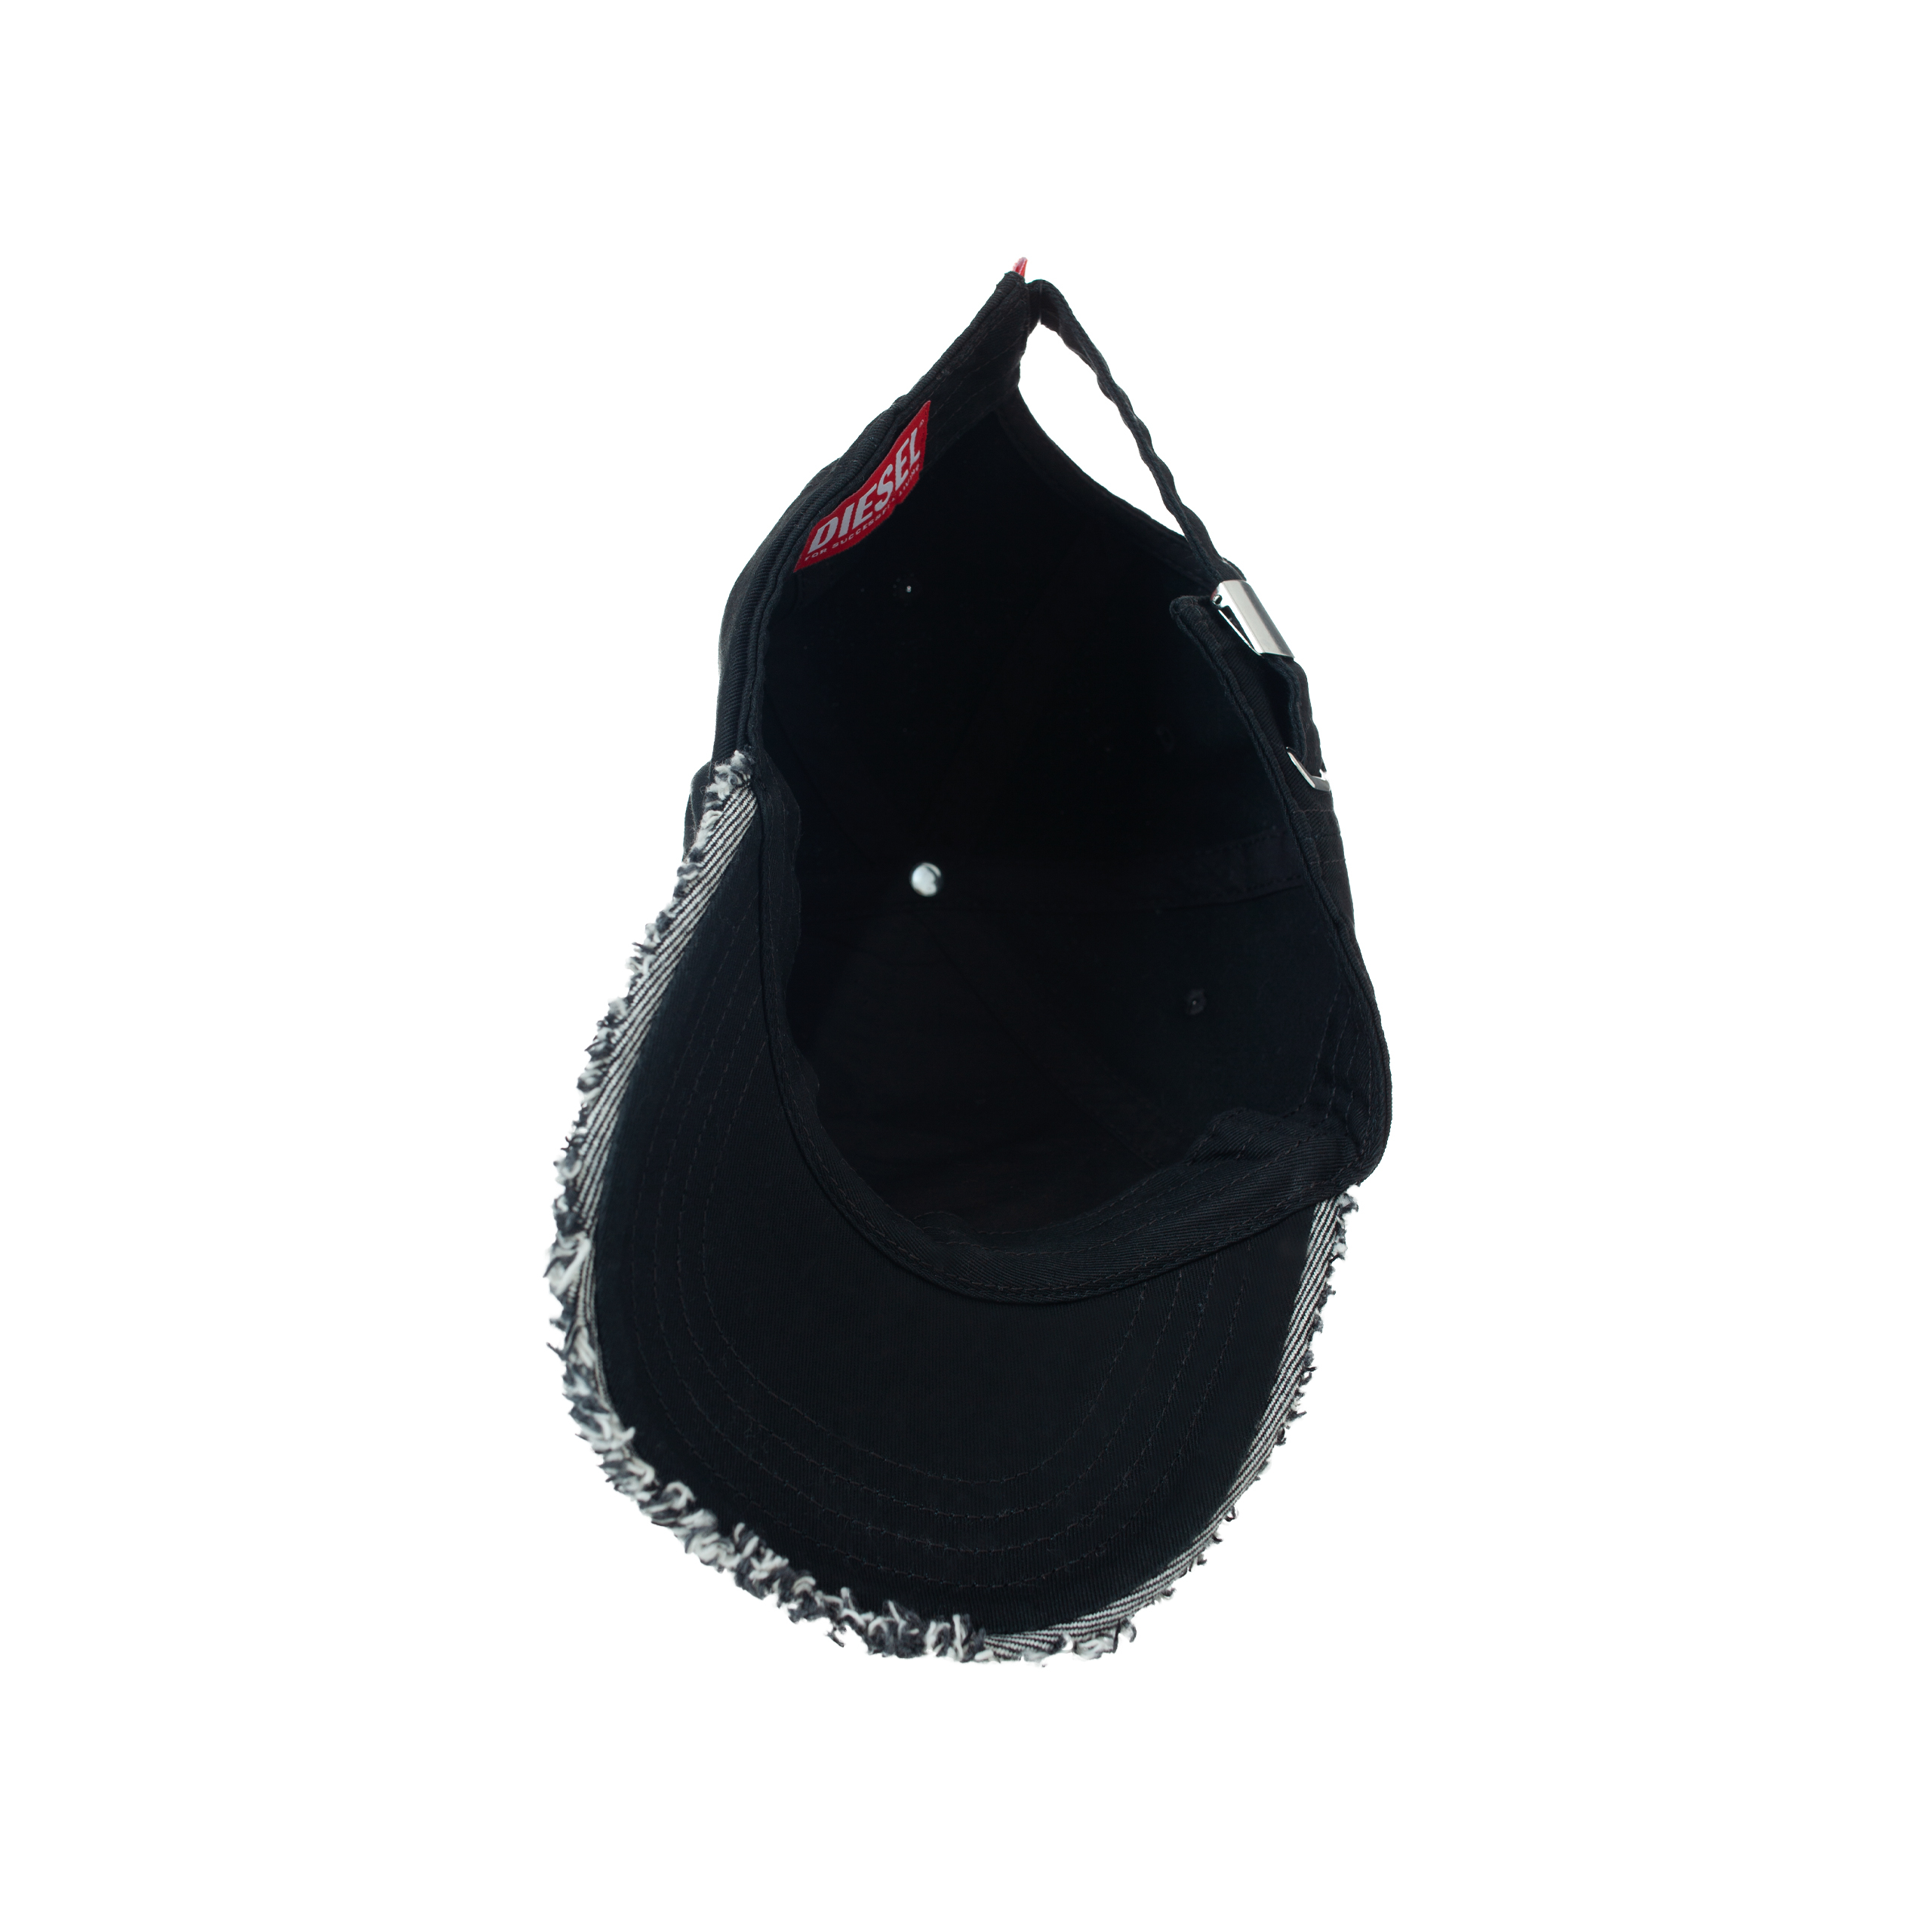 Джинсовая кепка с рваными краями Diesel A101570GEAK9XX, размер 2 - фото 3